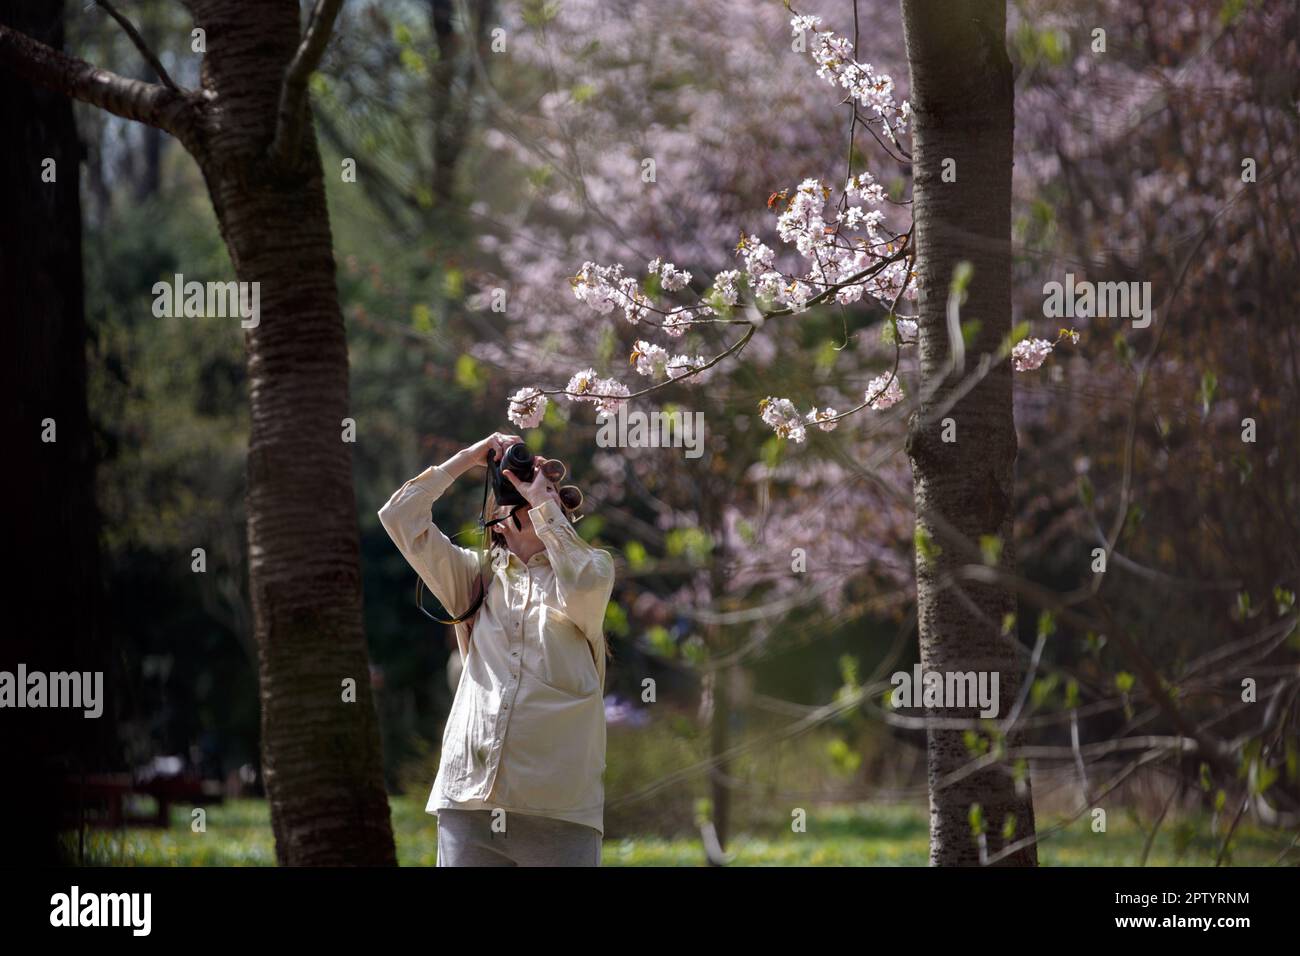 Eine junge Frau benutzt eine Digitalkamera, um einen Fotosakura-Baum zu machen. Ein Mädchen, das im Frühling im Park Fotos von rosa Baumblumen macht. Blühender Baum auf sonnigem Spri Stockfoto